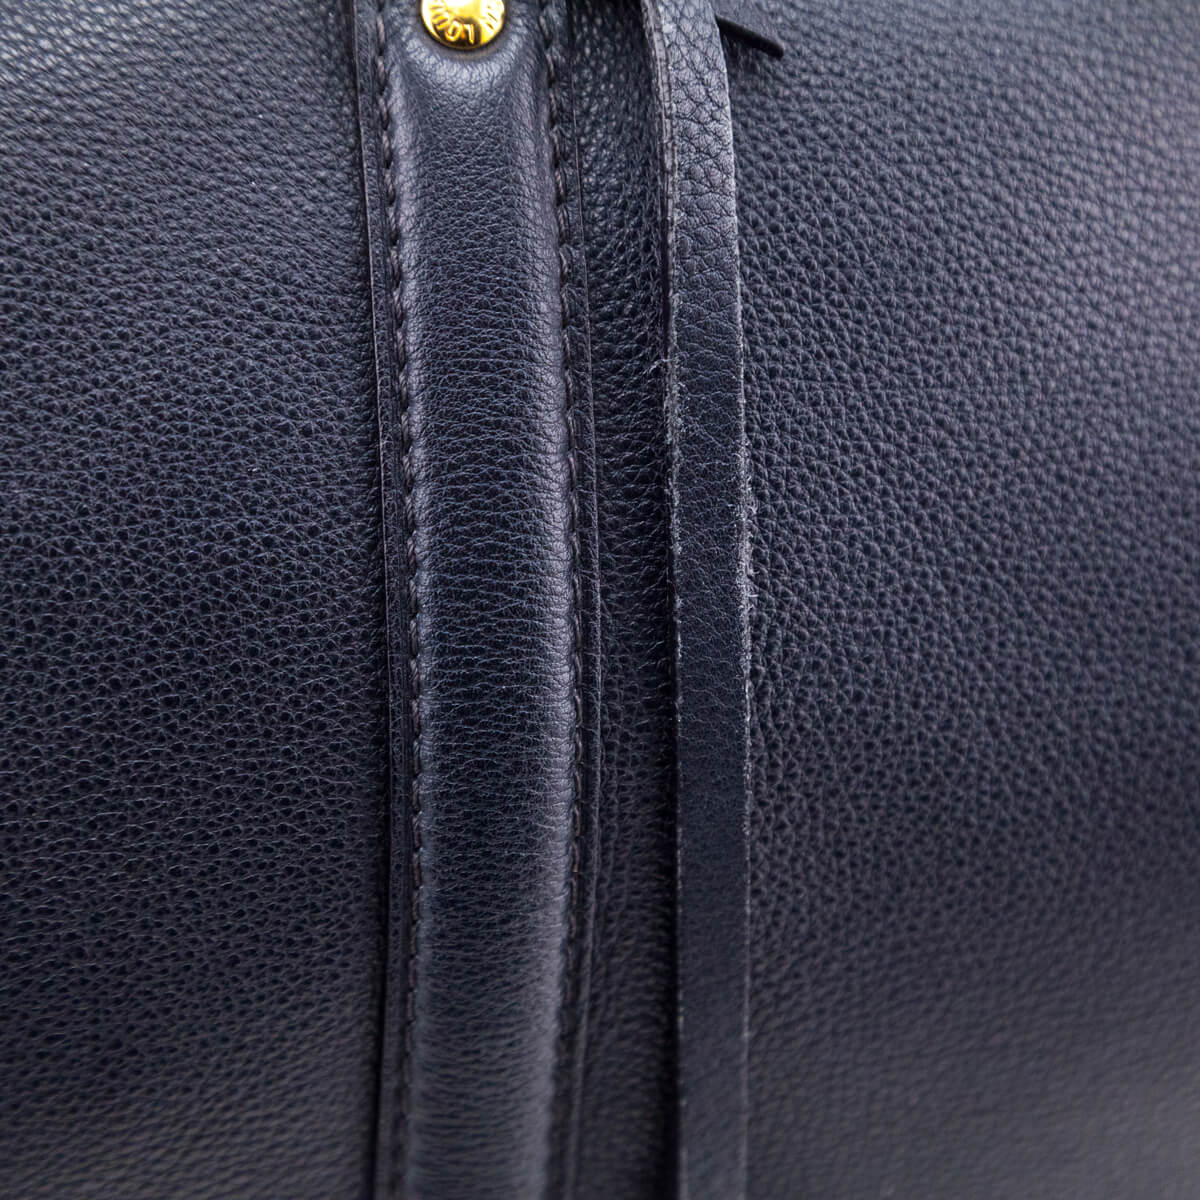 Louis Vuitton SC bag Sofia Coppola NAVY PM size L11.4 x H8.7 x W5